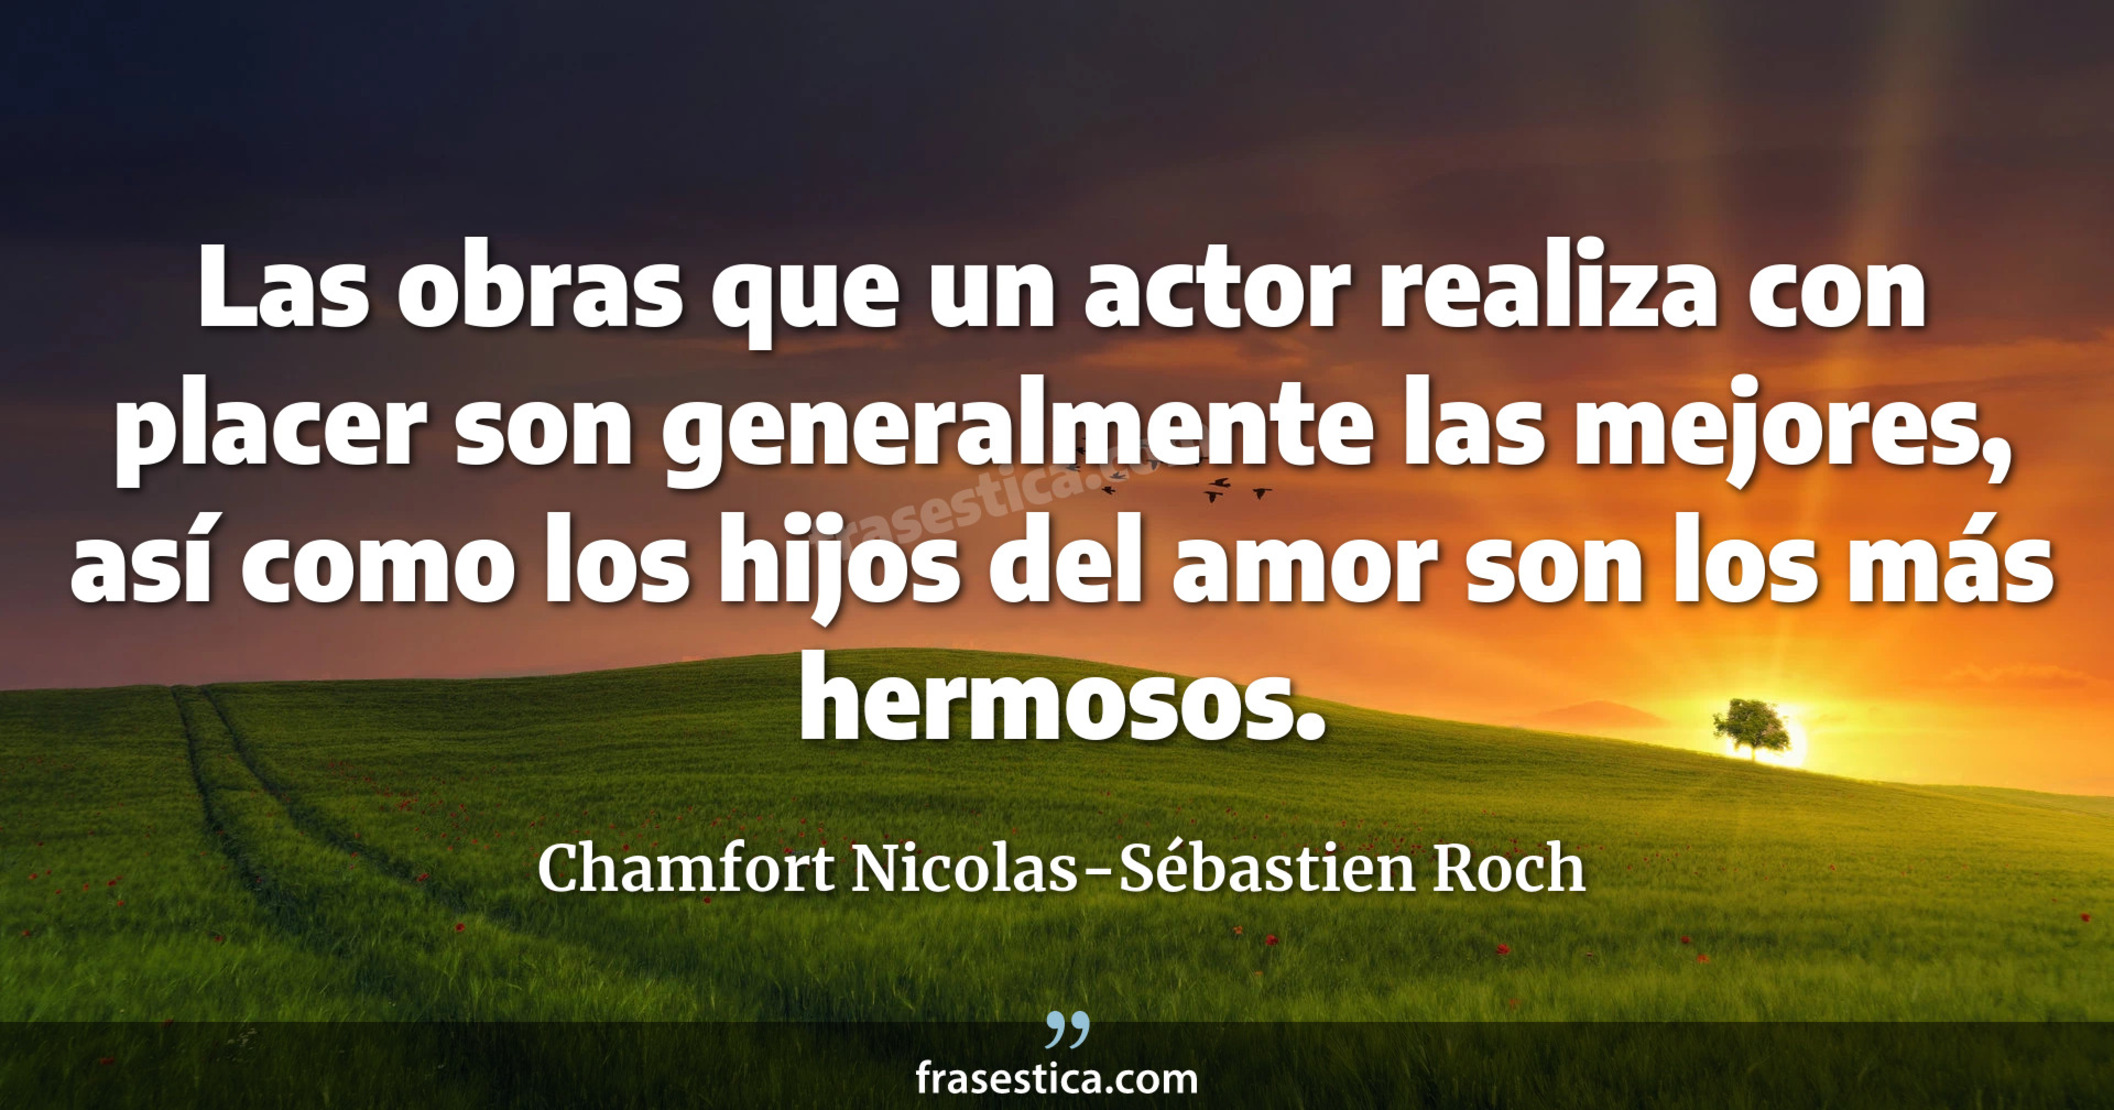 Las obras que un actor realiza con placer son generalmente las mejores, así como los hijos del amor son los más hermosos. - Chamfort Nicolas-Sébastien Roch